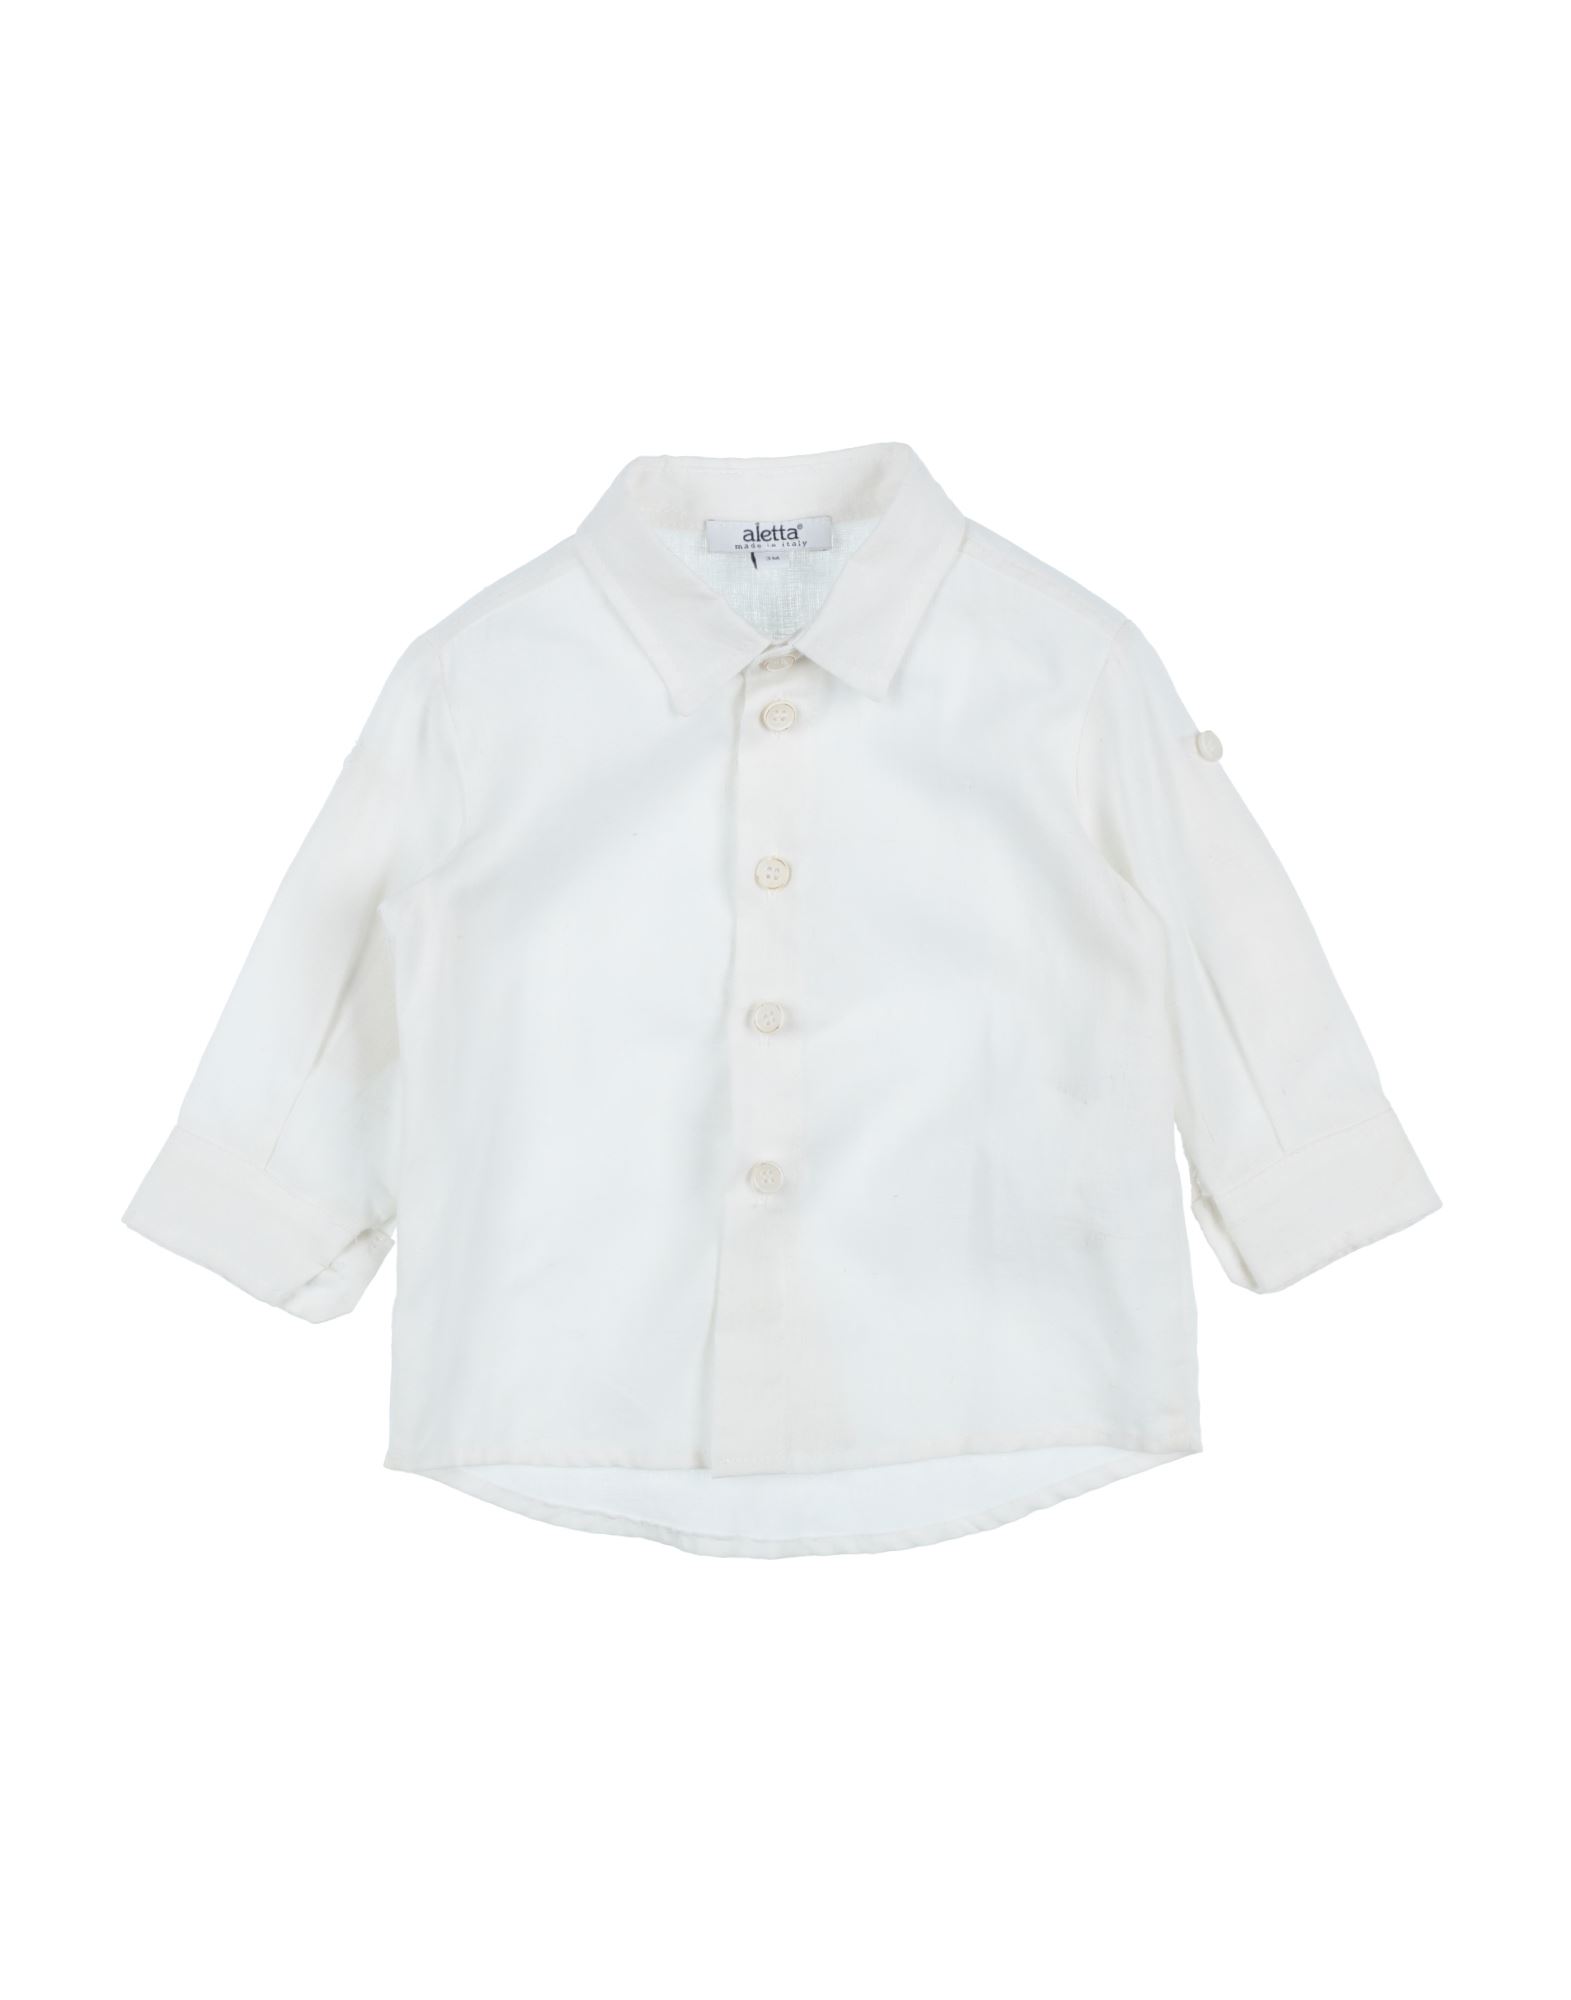 Aletta Kids'  Shirts In White